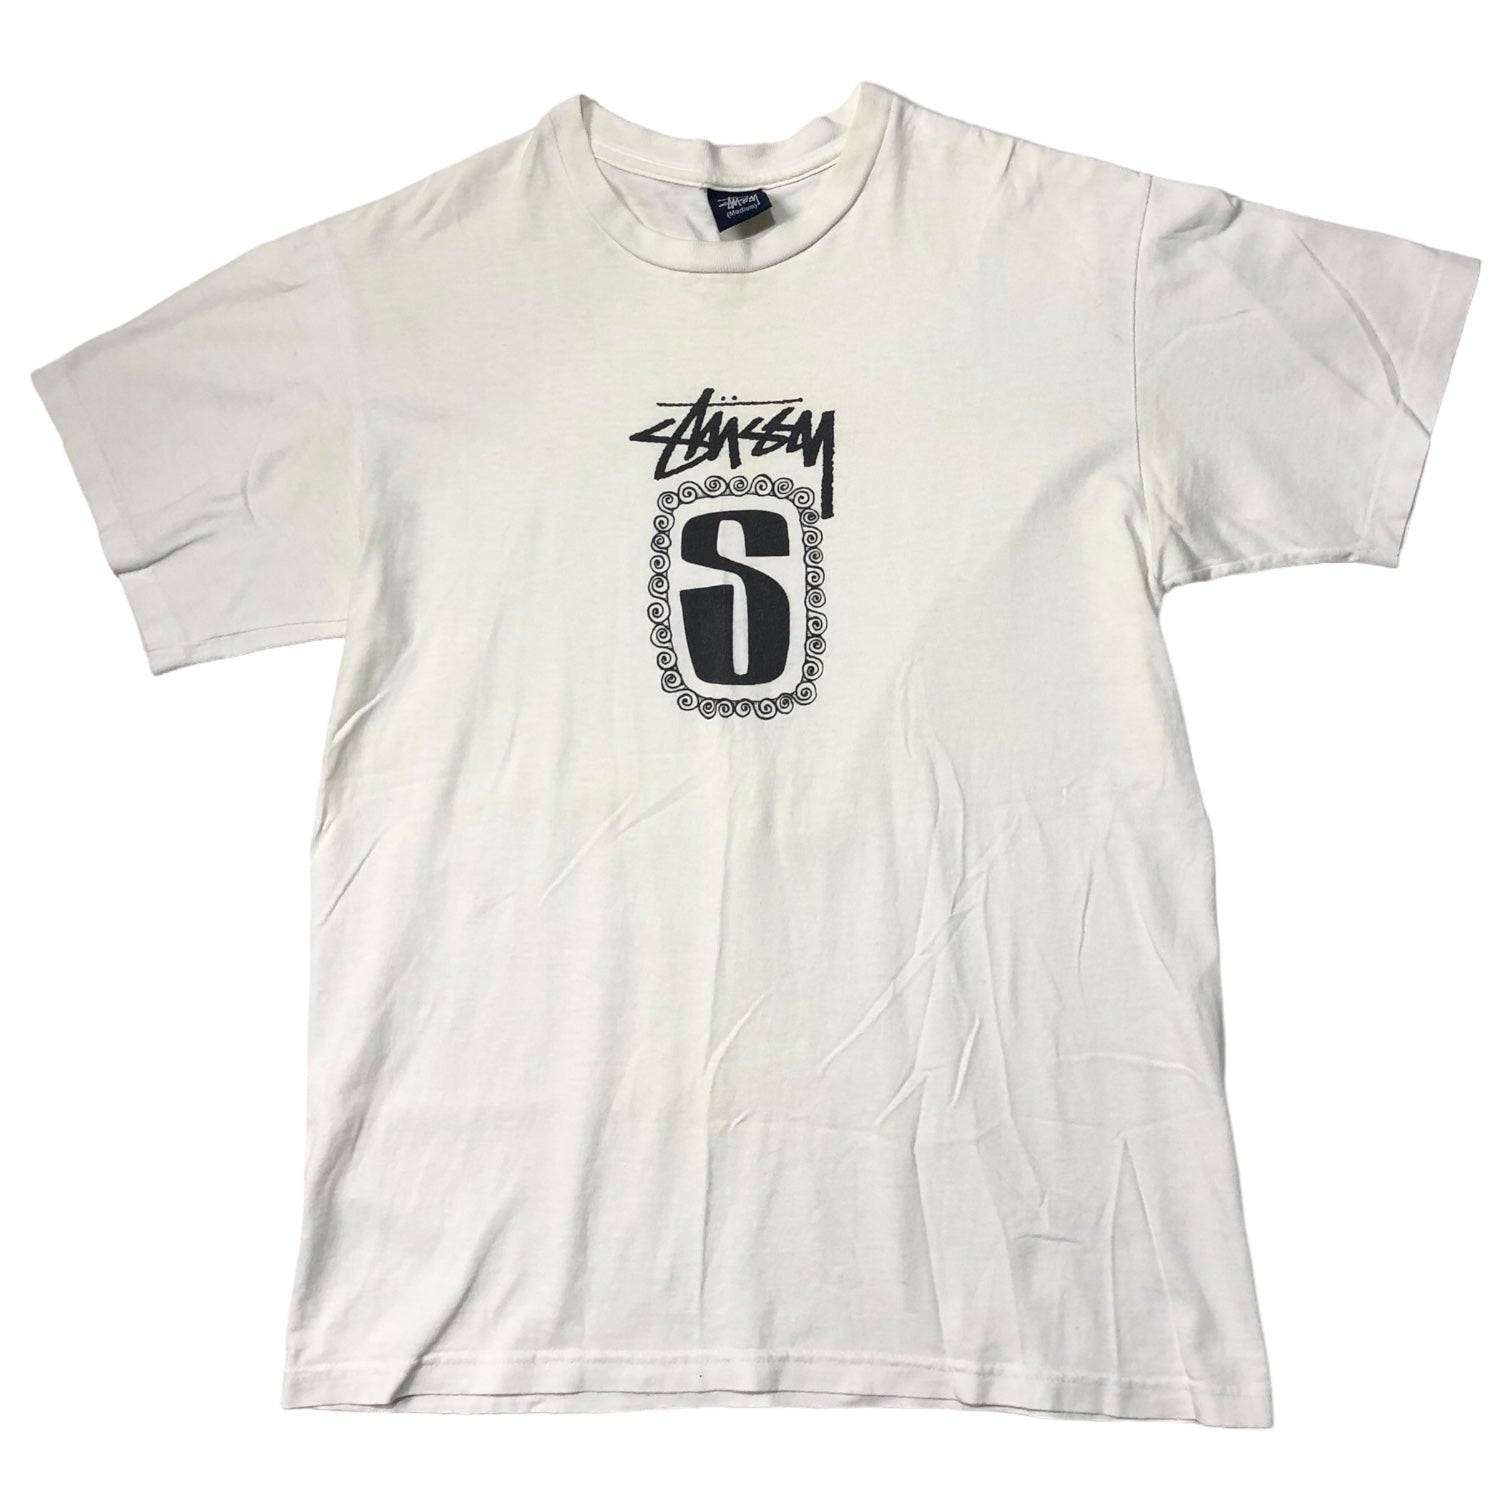 STUSSY(ステューシー) 90's~00's center logo ロゴ Tシャツ 紺タグ SIZE M ホワイト×ホワイト 90～00年代 OLD STUSSY